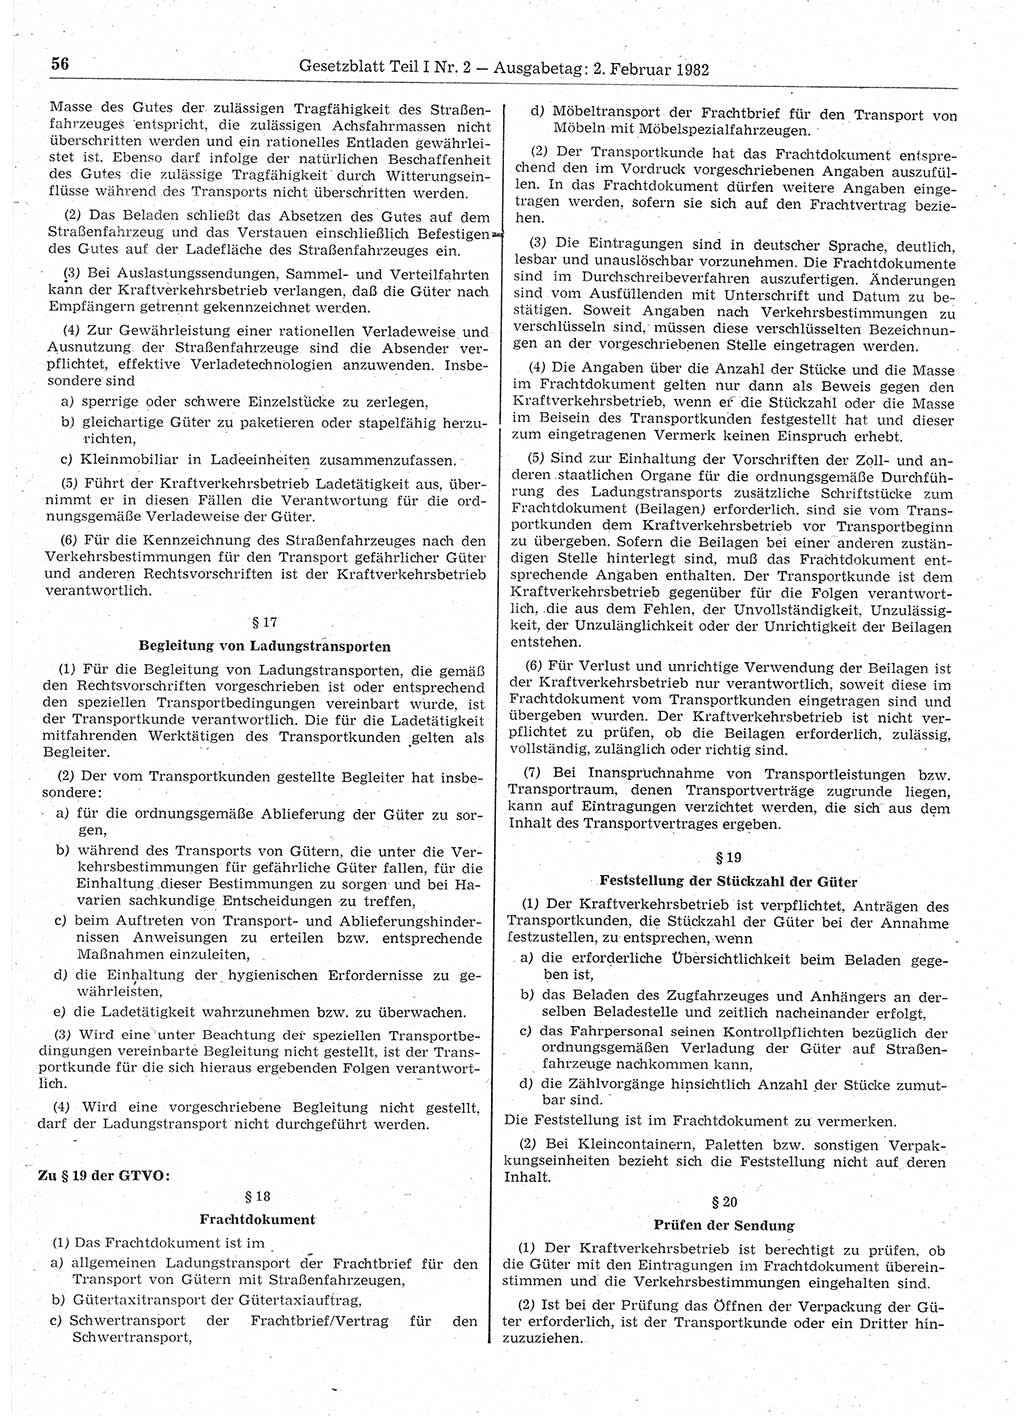 Gesetzblatt (GBl.) der Deutschen Demokratischen Republik (DDR) Teil Ⅰ 1982, Seite 56 (GBl. DDR Ⅰ 1982, S. 56)